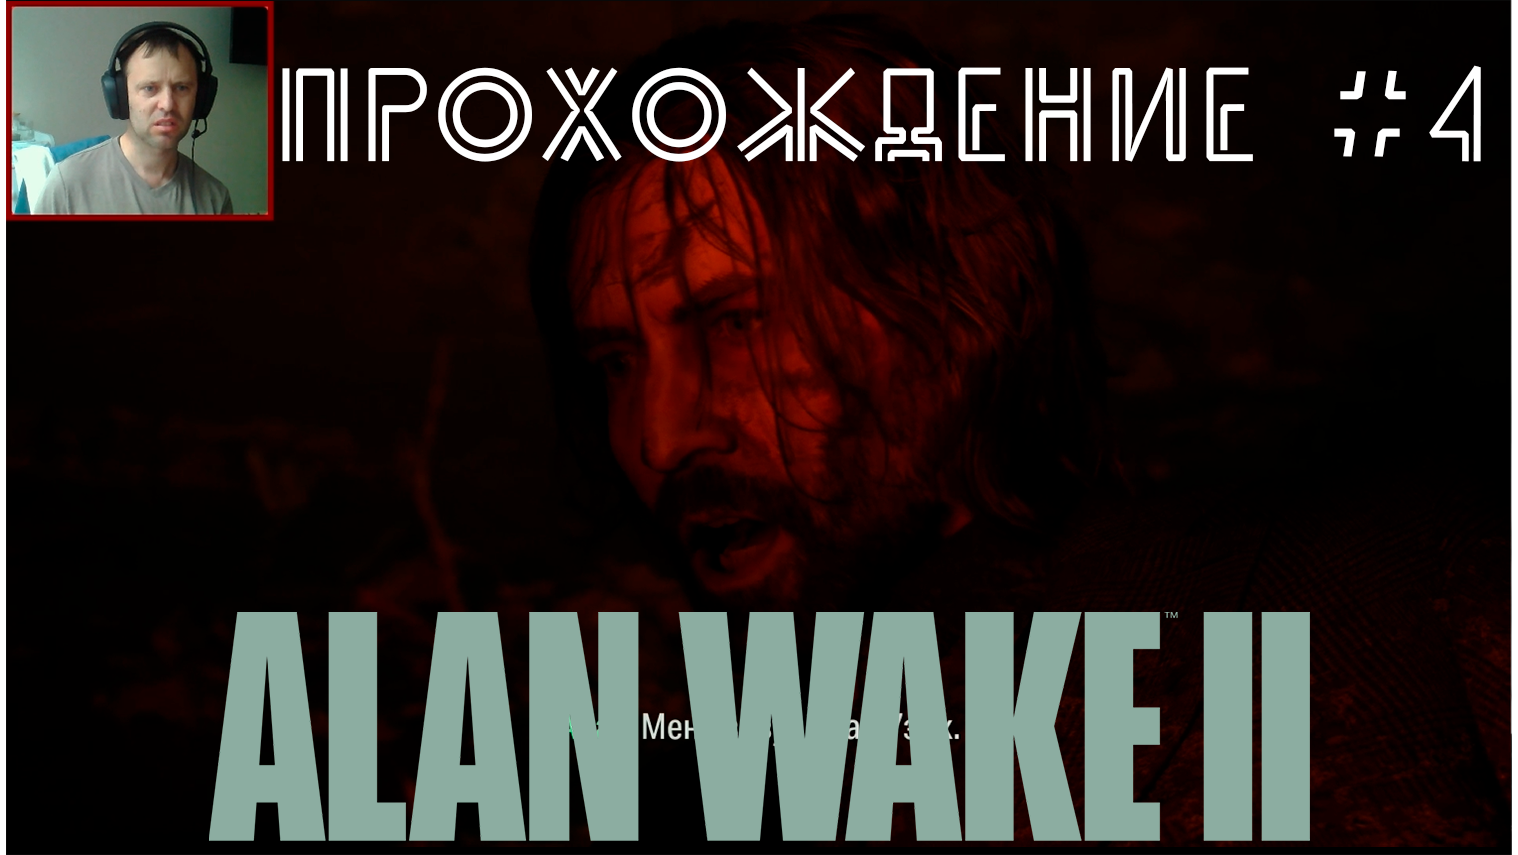 Alan Wake 2. Прохождение №4. Спасли Алана